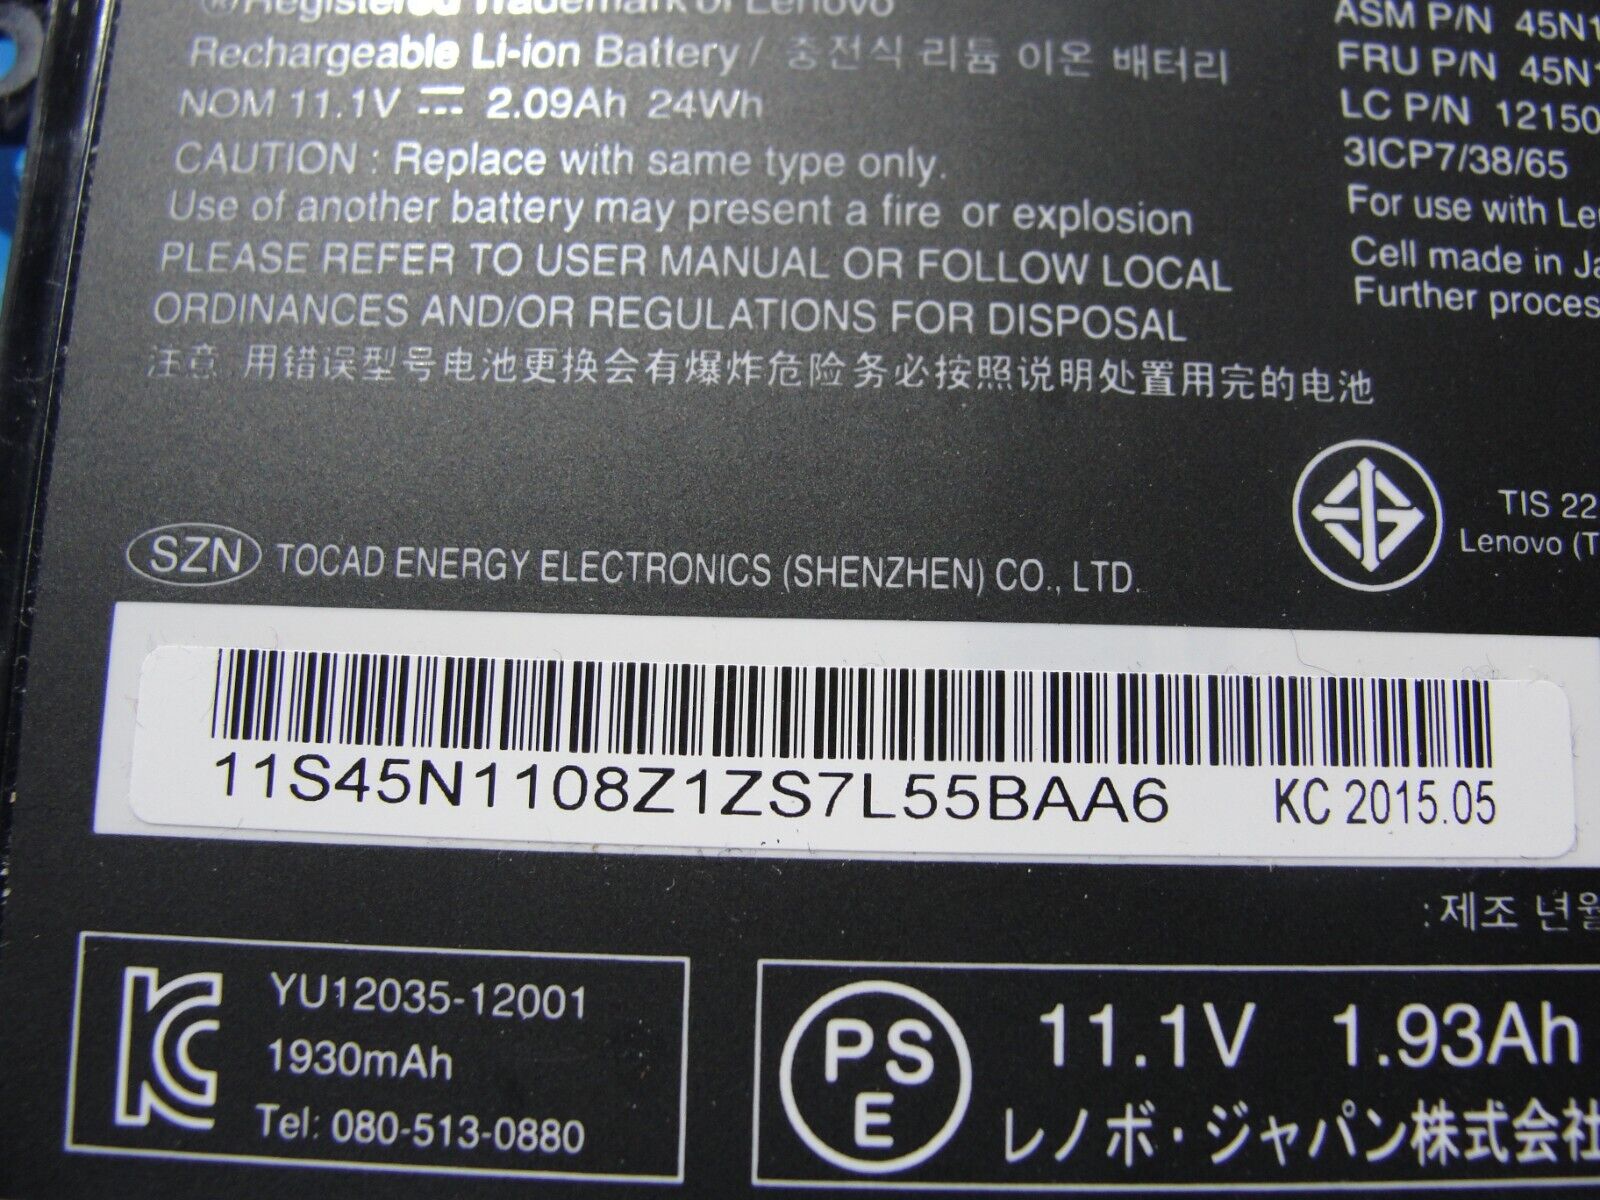 Lenovo ThinkPad T440s 14